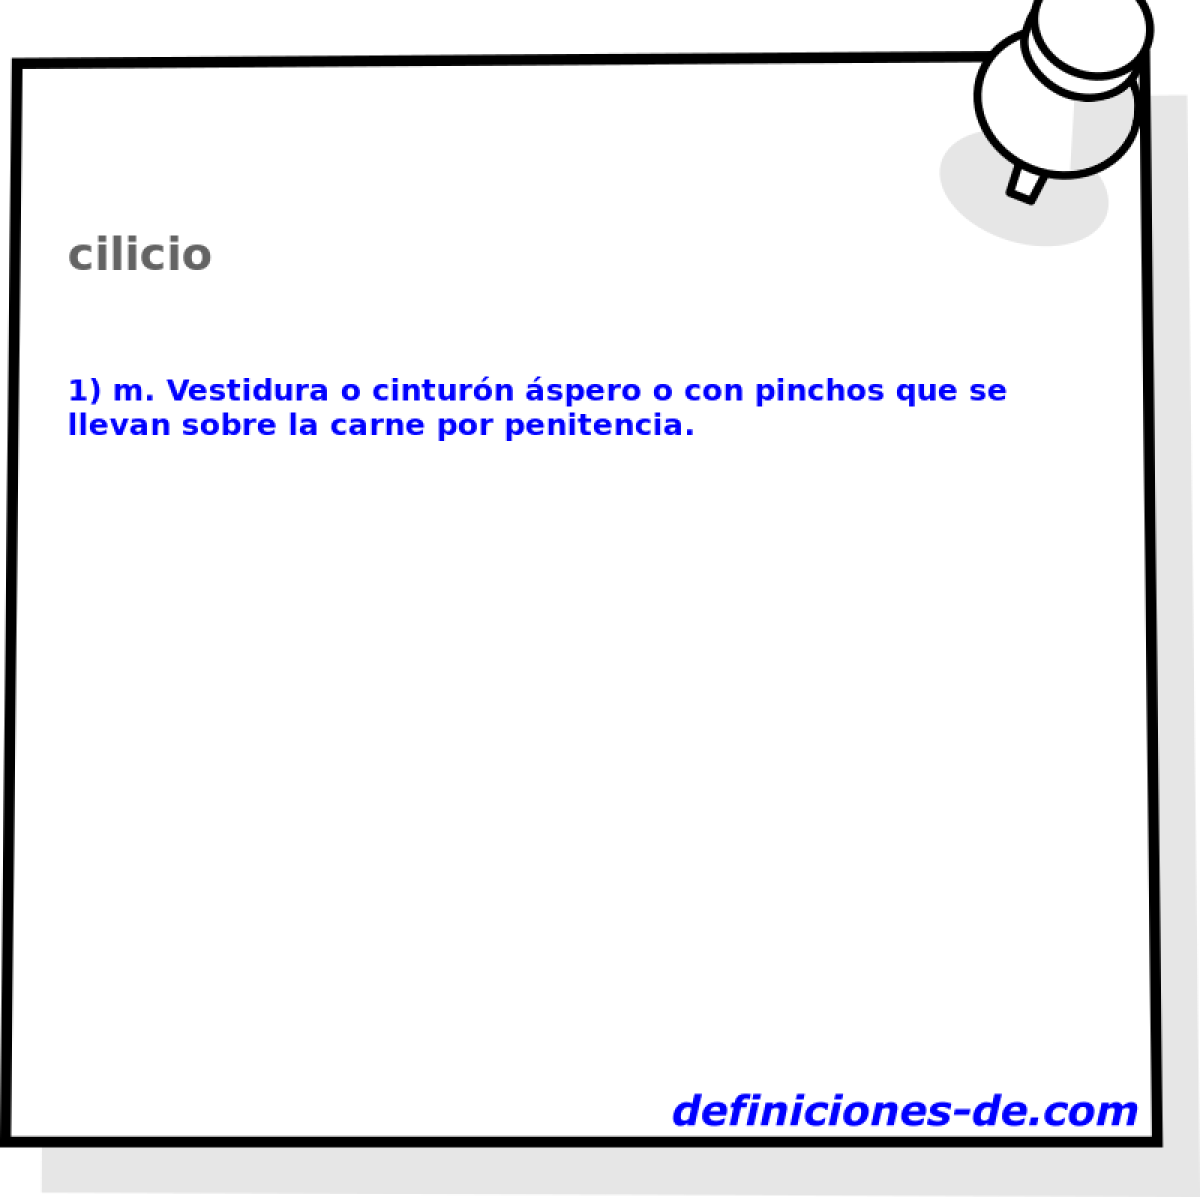 cilicio 